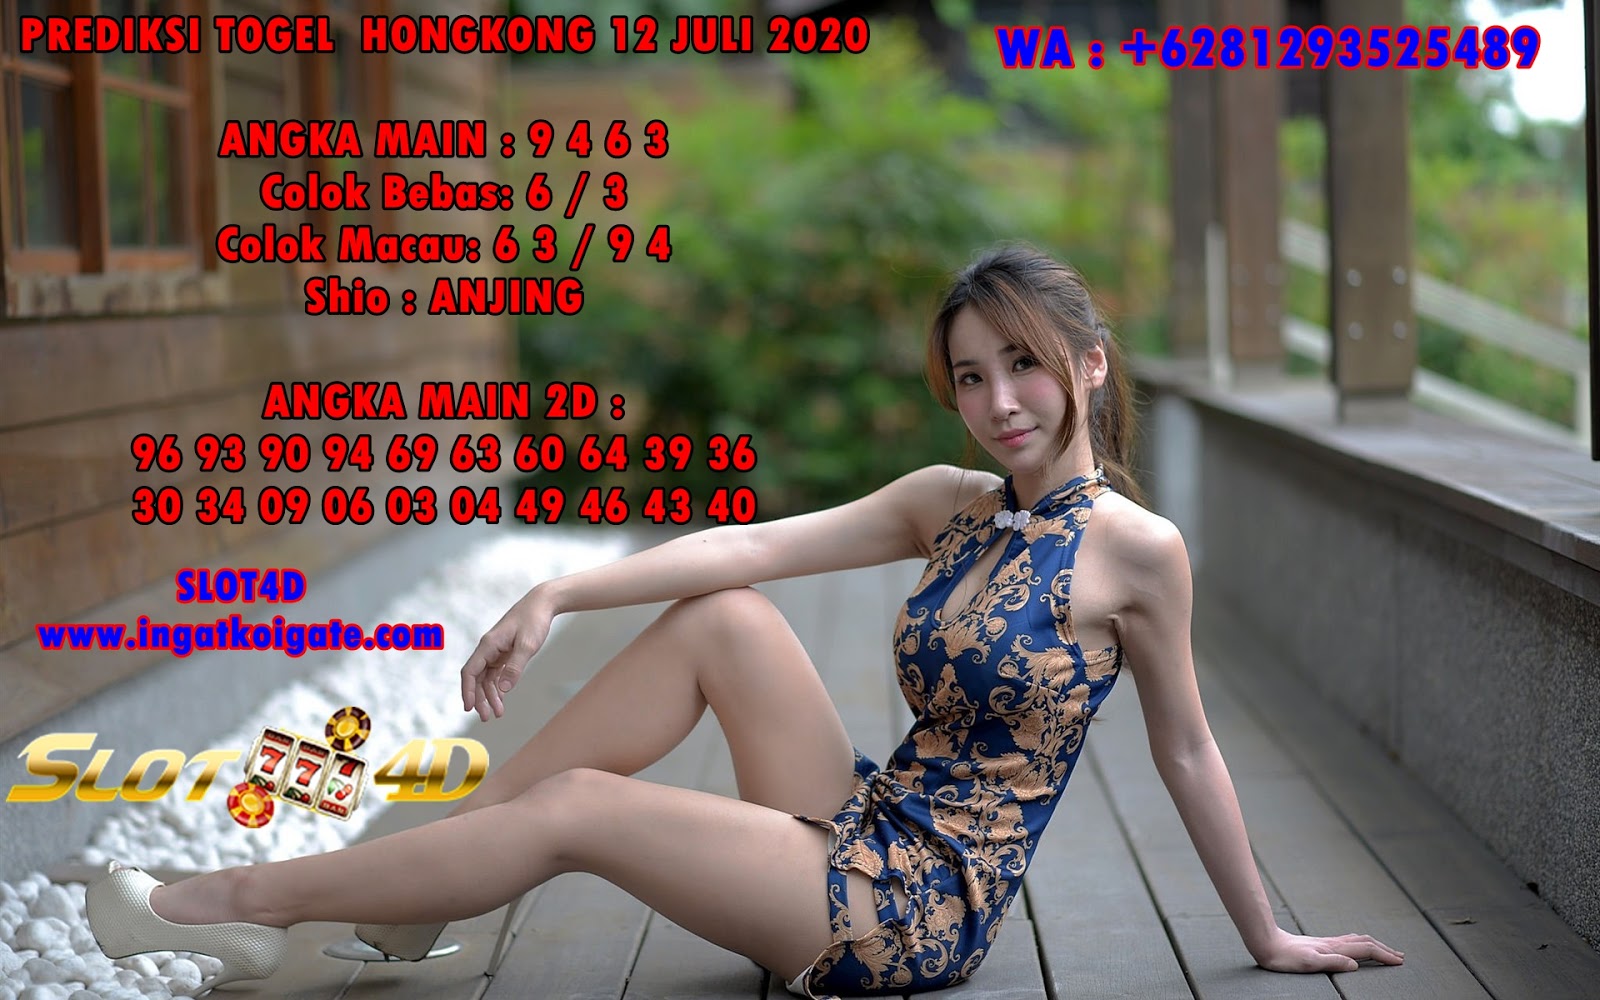 PREDIKSI TOGEL HONGKONG 12 JULI 2020 ~ AGEN SLOT DAN TOGEL TERPERCAYA